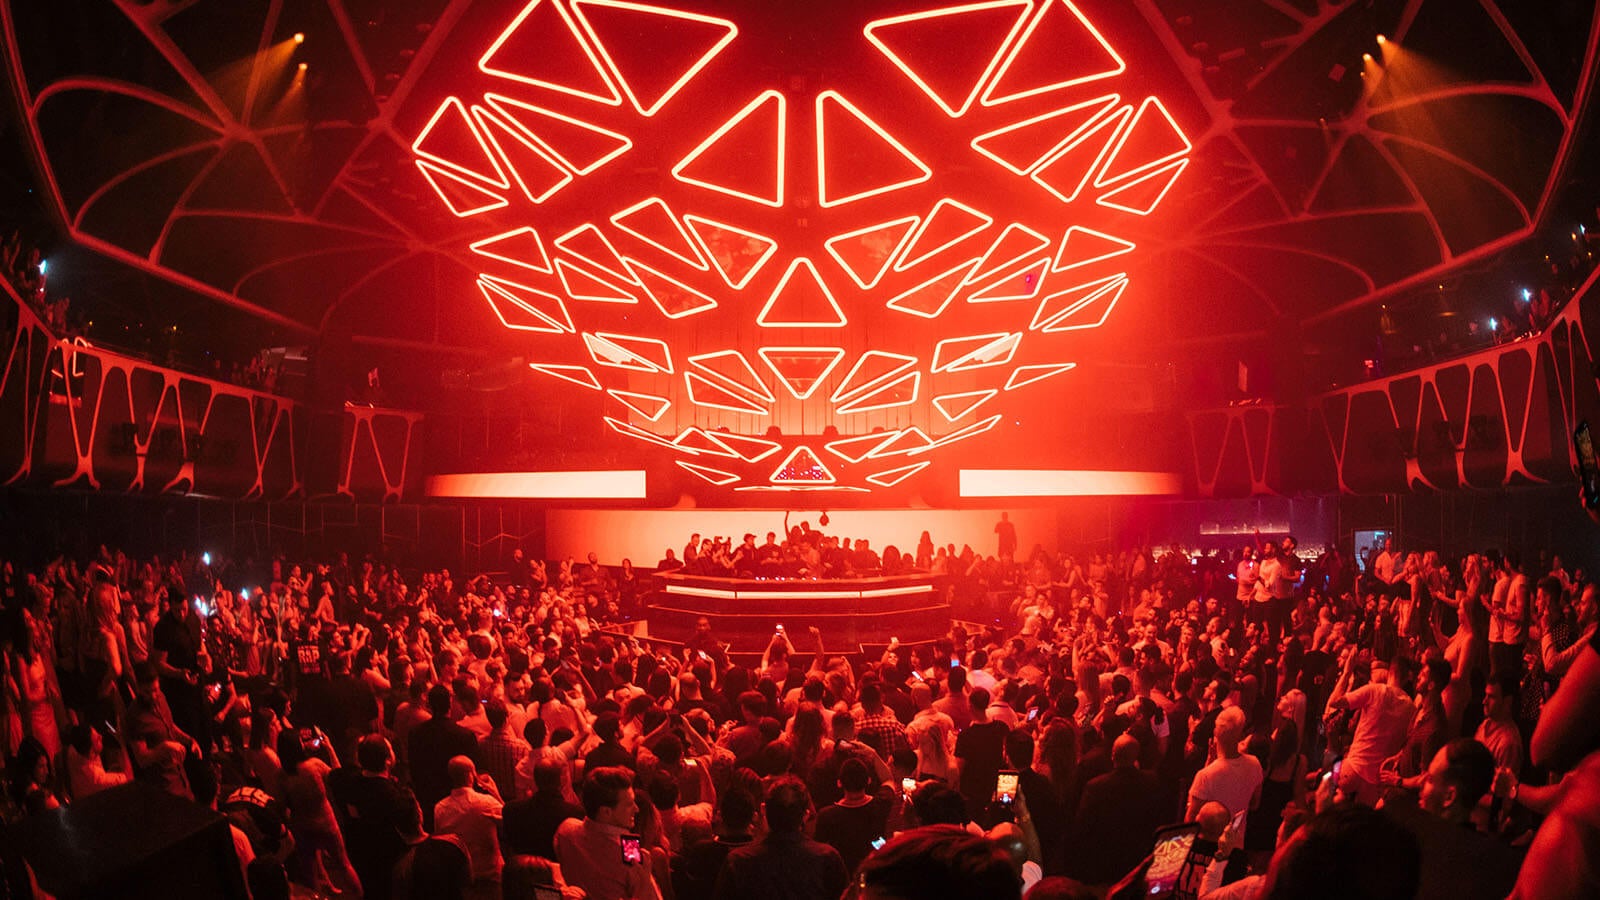 Hakkasan Grid with Nightclub Patrons